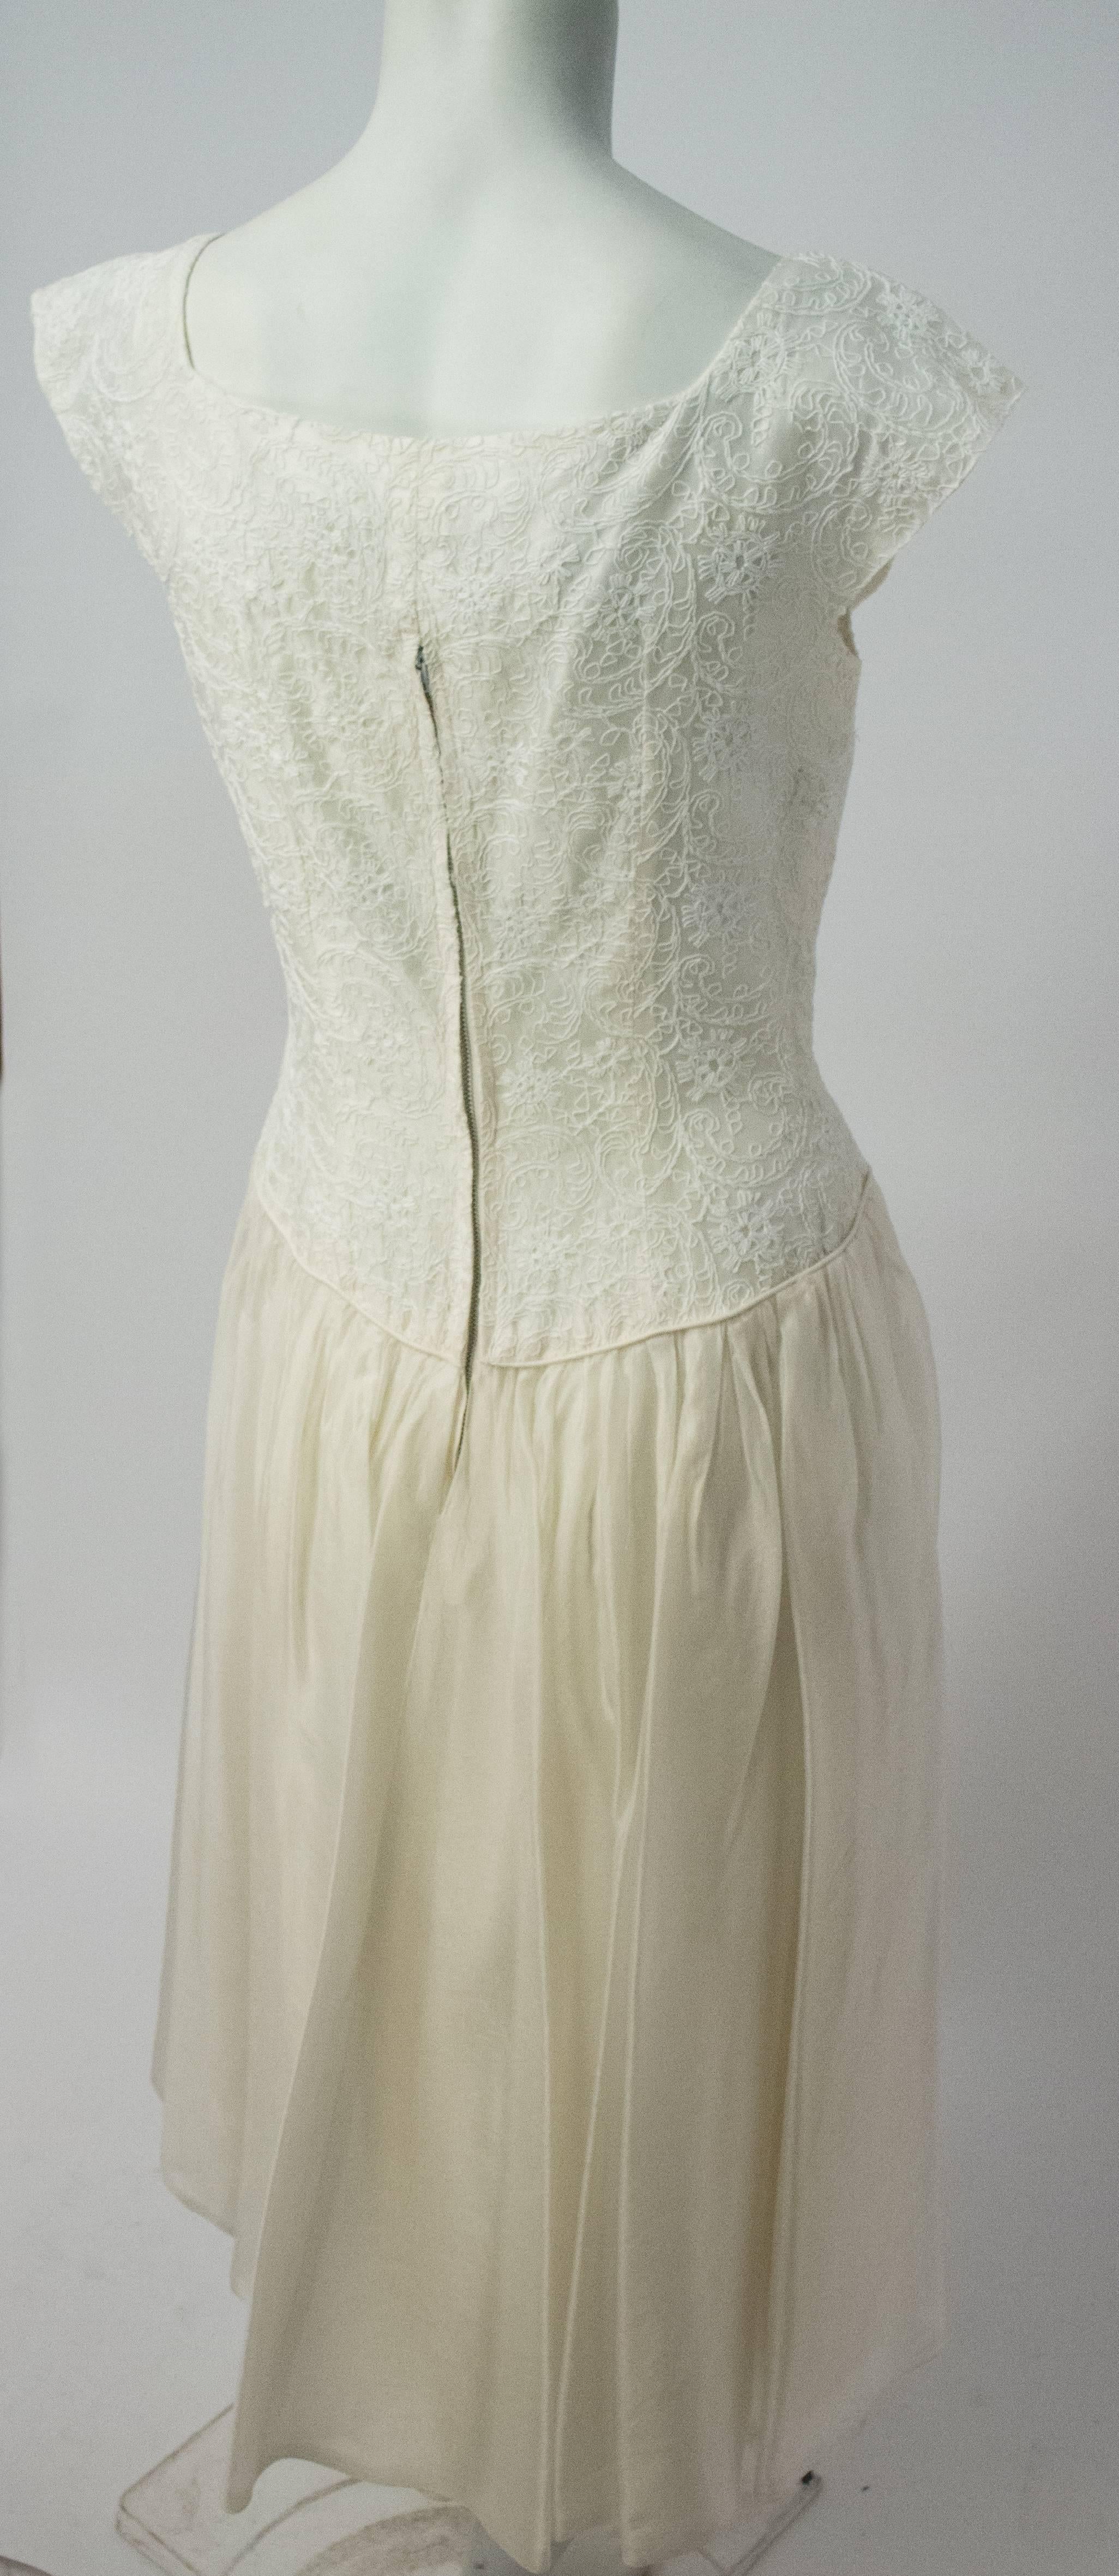 robe Emma Domb des années 50 en organza brodé blanc. Fausse ouverture à boutons sur le devant. Fermeture éclair arrière en métal. 